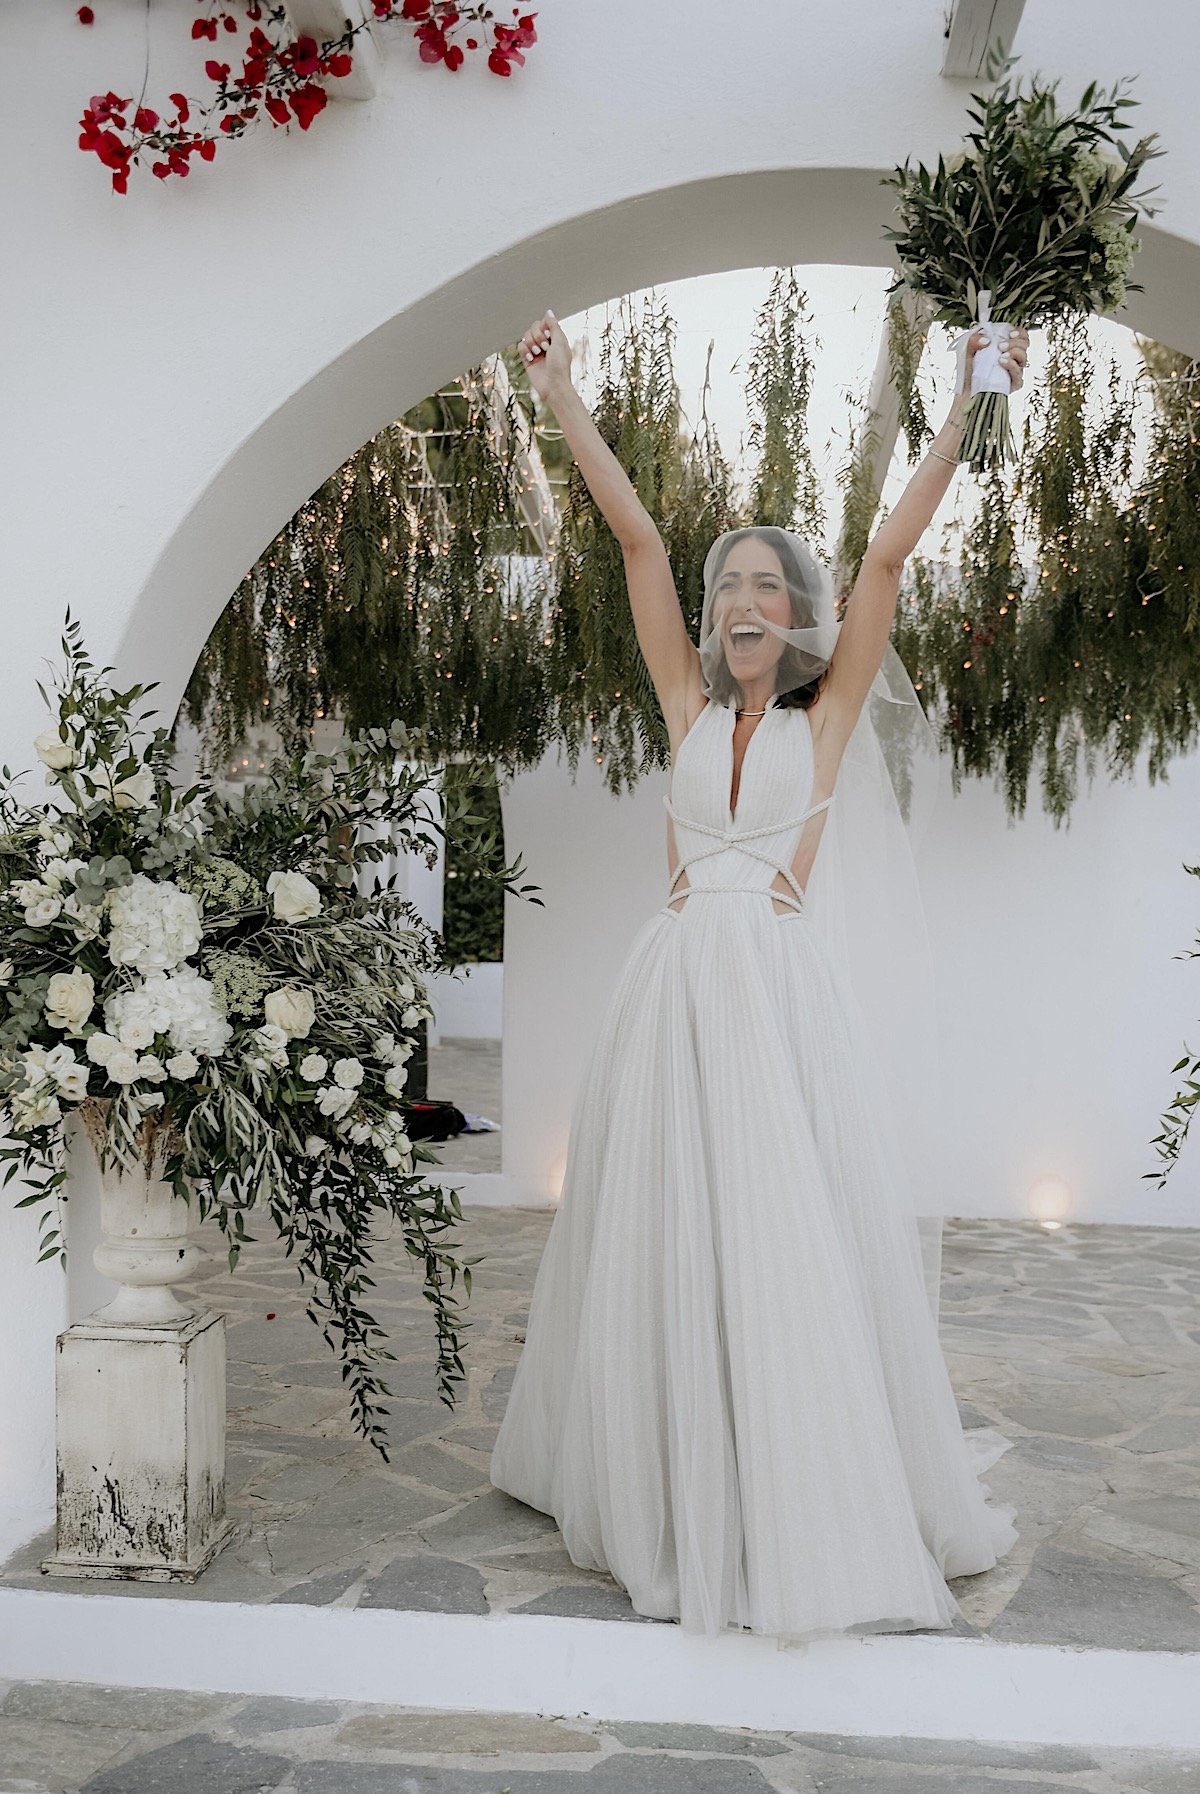 Greek bride cheering after romantic wedding ceremony